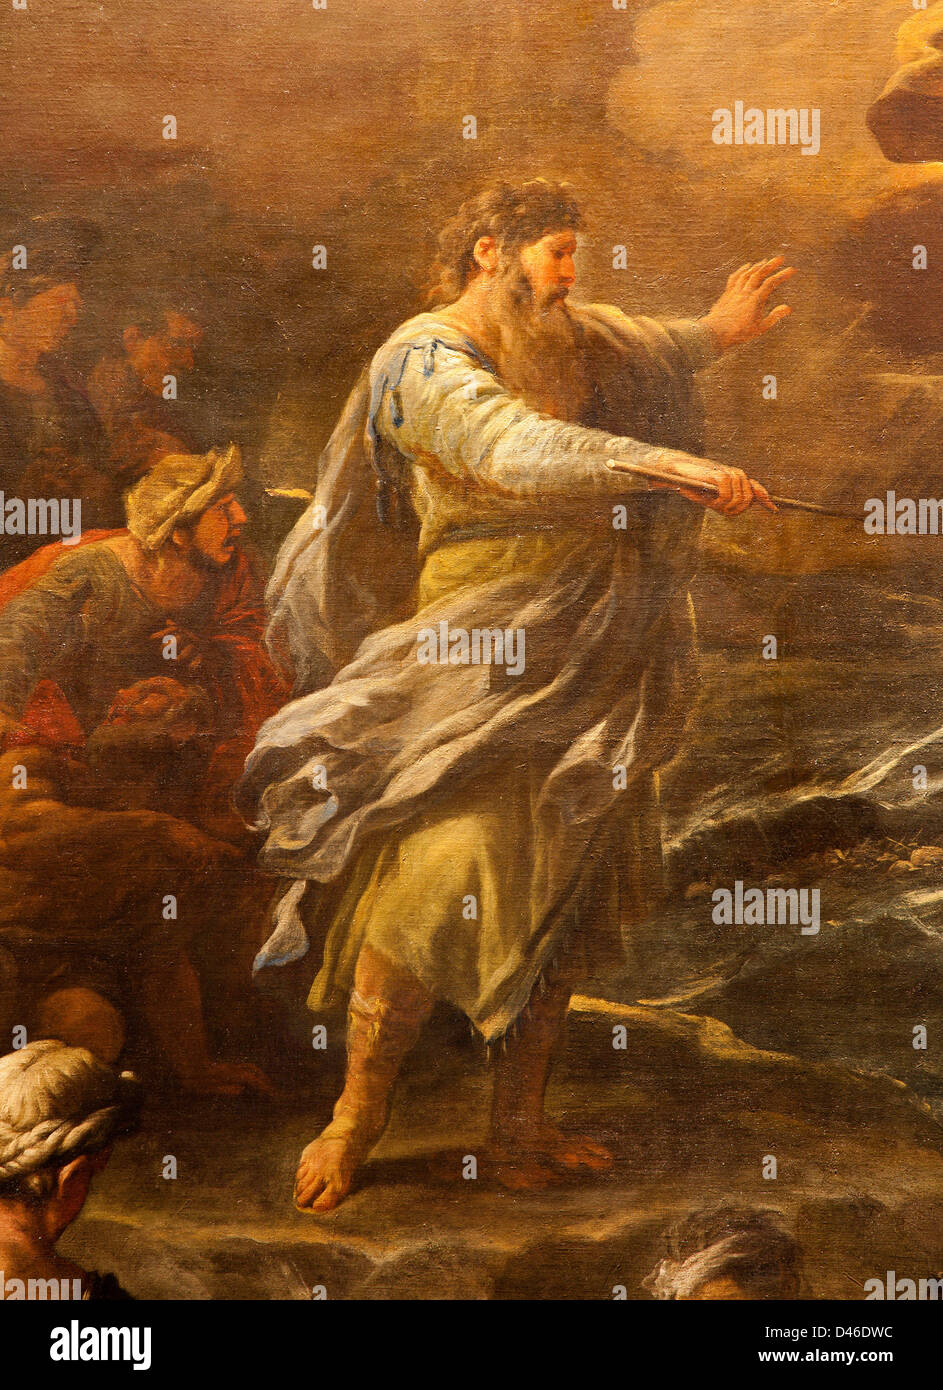 BERGAMO - 26 Januar: Moses von Paint "Passaggio del Mar Rosso" von Luca Giordano. Überquerung des Roten Meeres Stockfoto